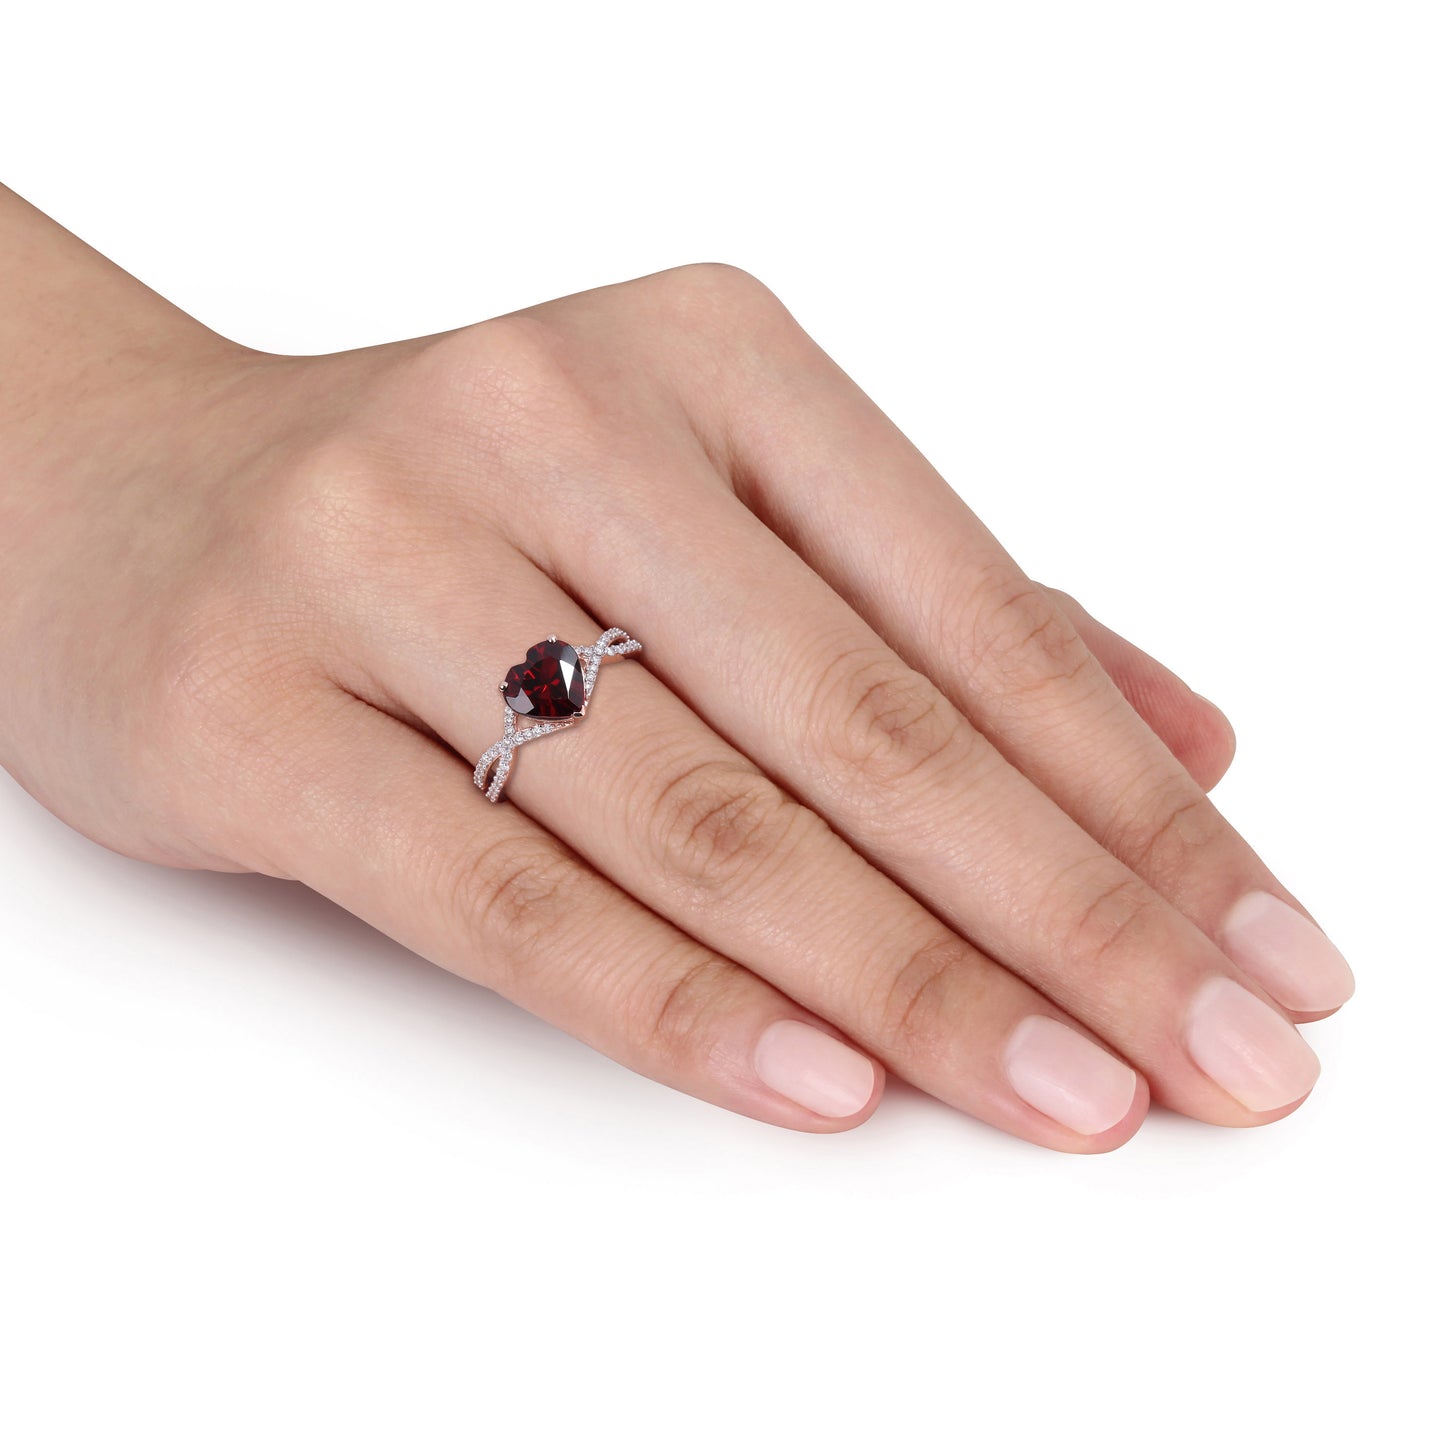 Garnet & Diamond Heart Infinity Ring in 14k Rose Gold